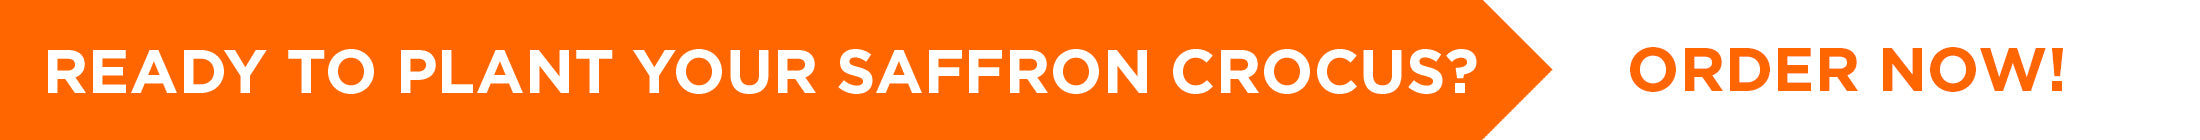 Order Your Saffron Crocus Online at DutchGrown